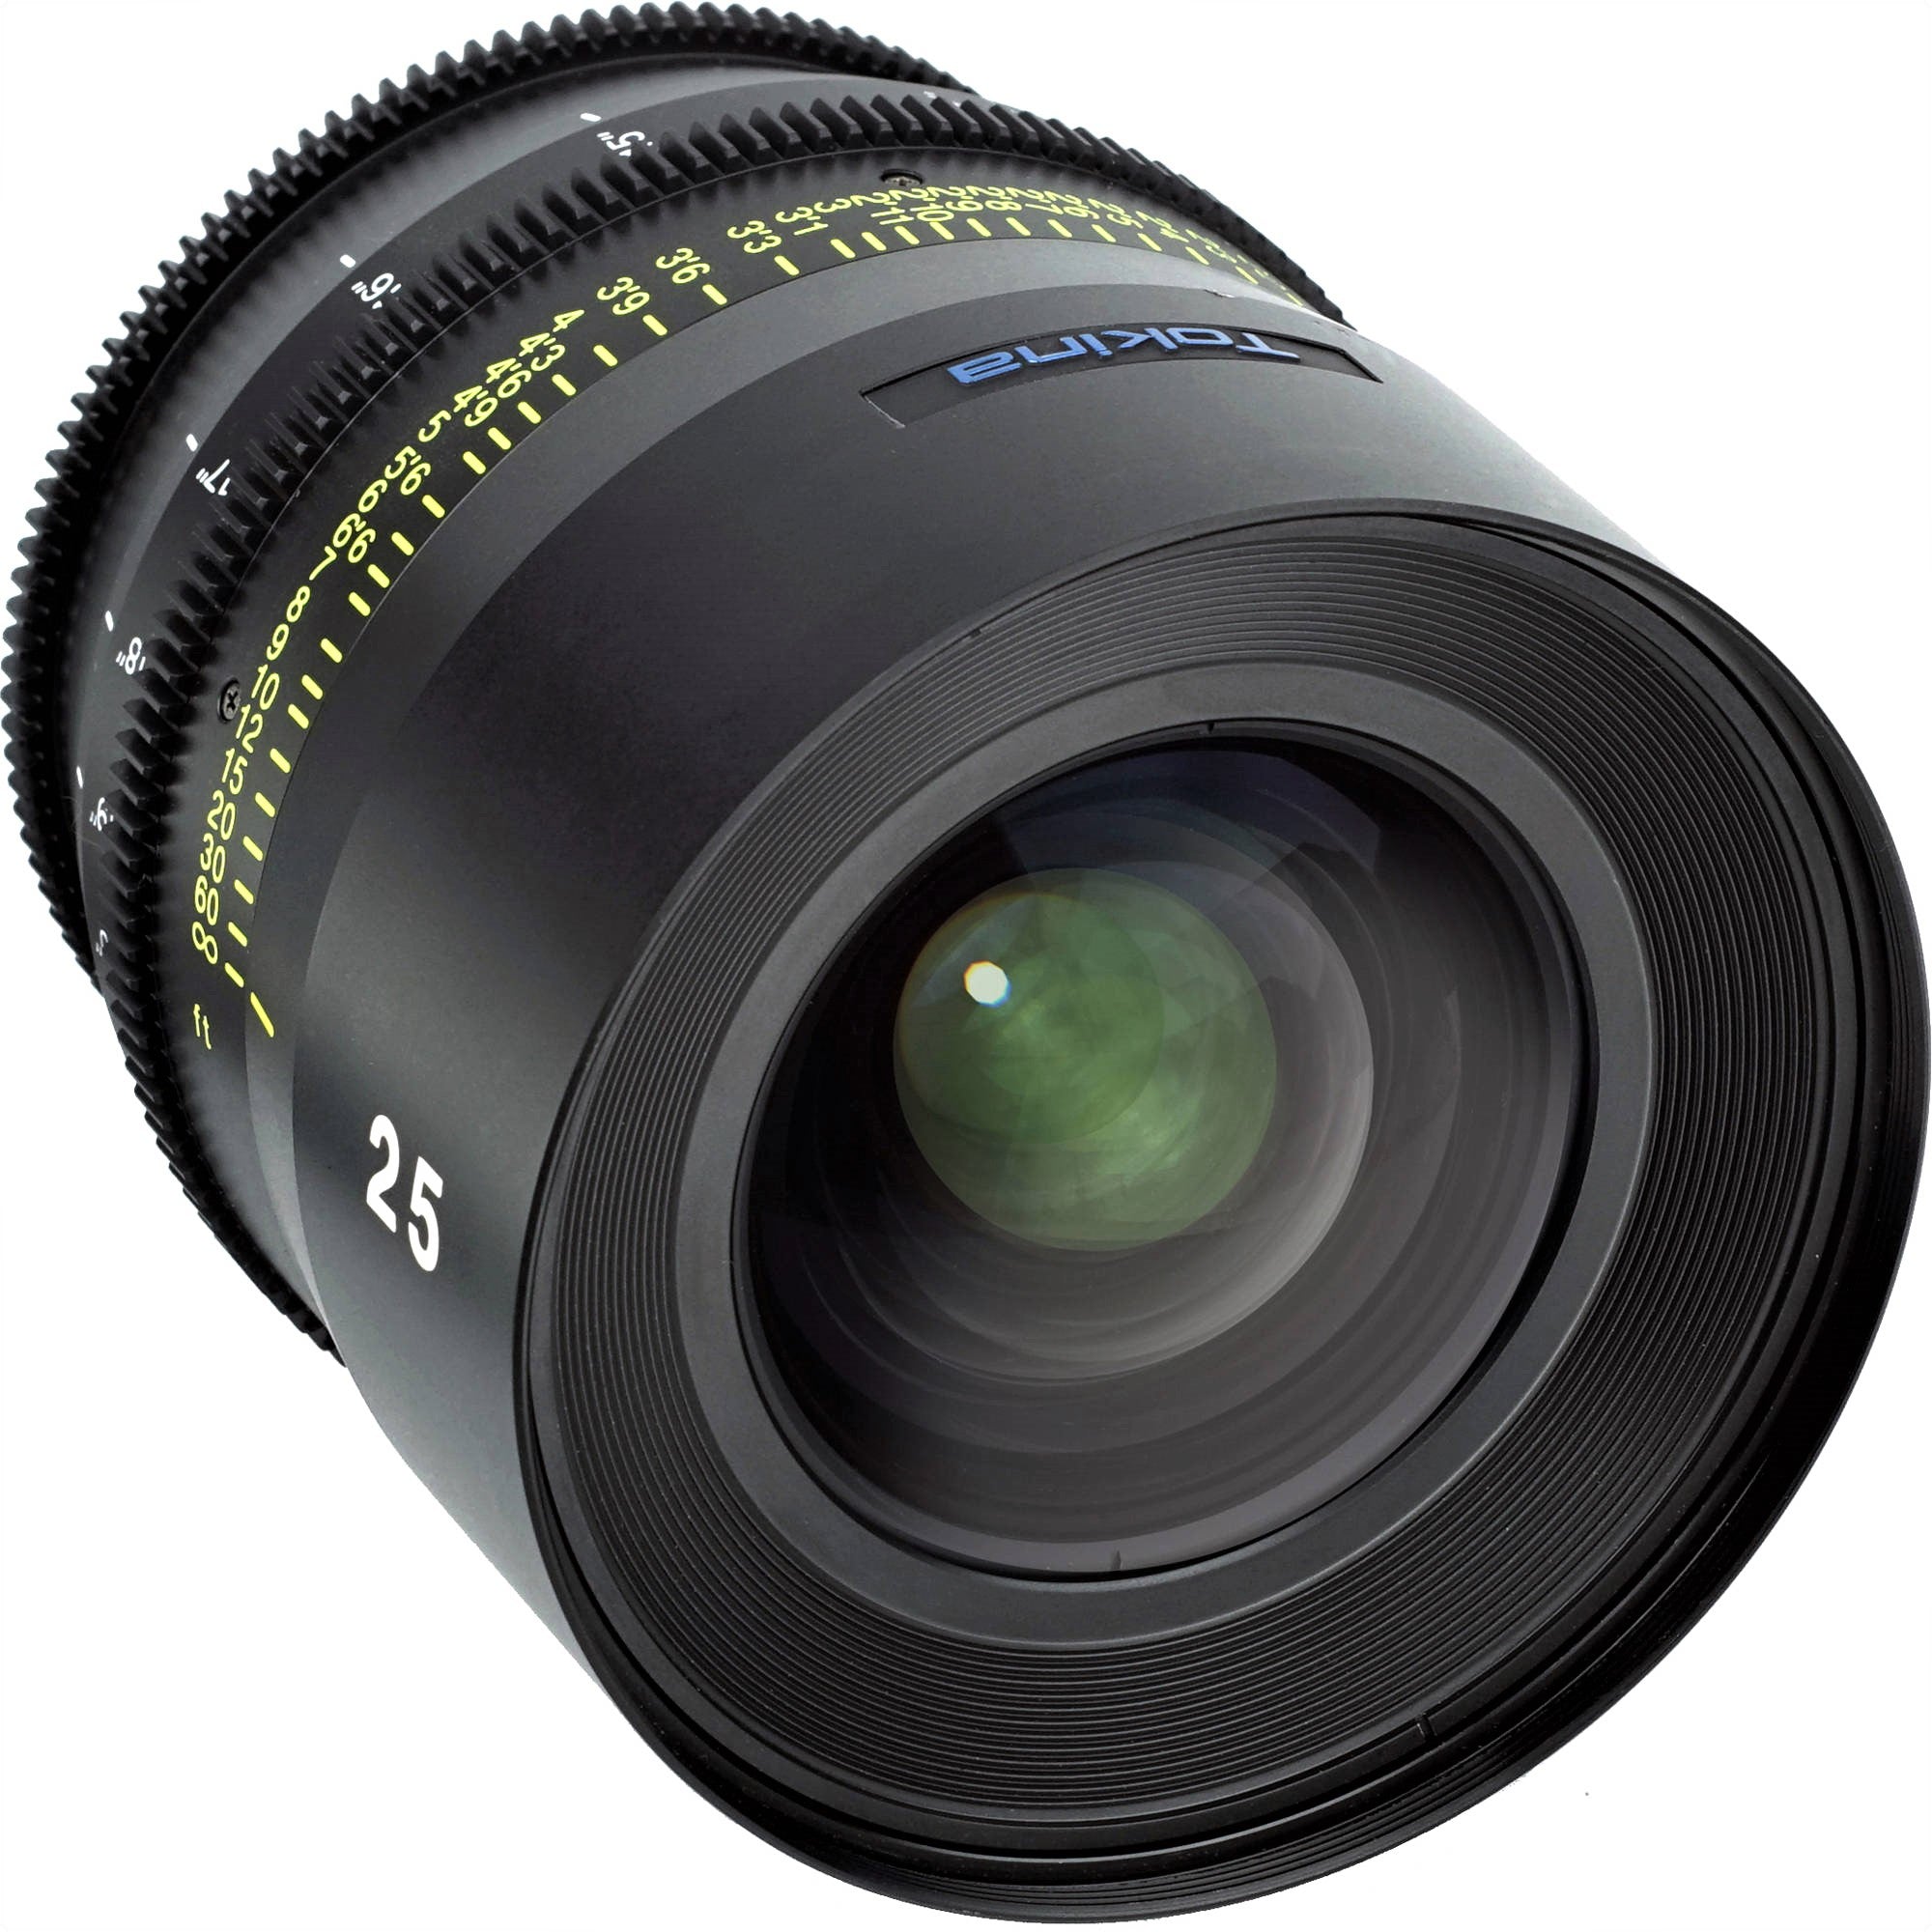 Tokina Cinema Vista 25mm T1.5 Lens (MFT Mount) in a Front-Side View